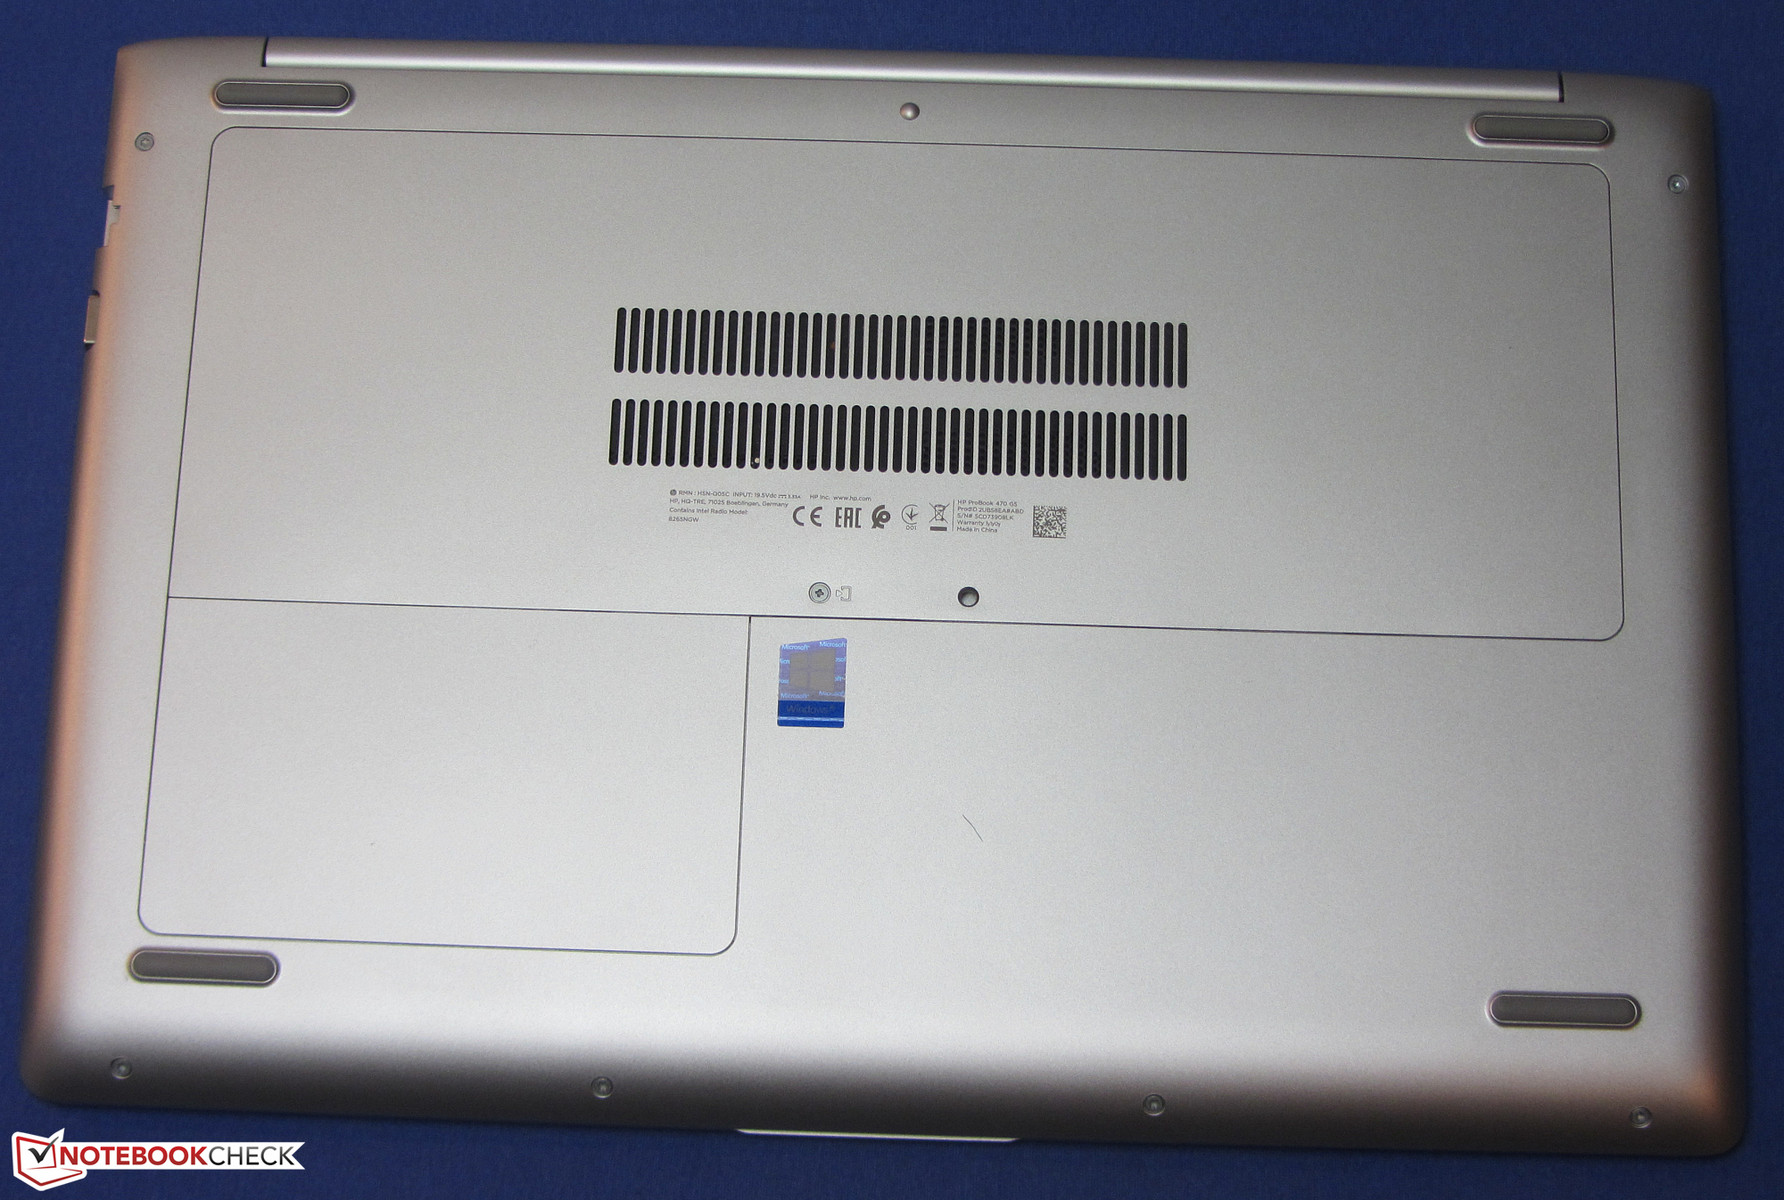 HP ProBook 470 G5 (i5-8250U, 930MX, SSD, FHD) Laptop Review - NotebookCheck.net Reviews